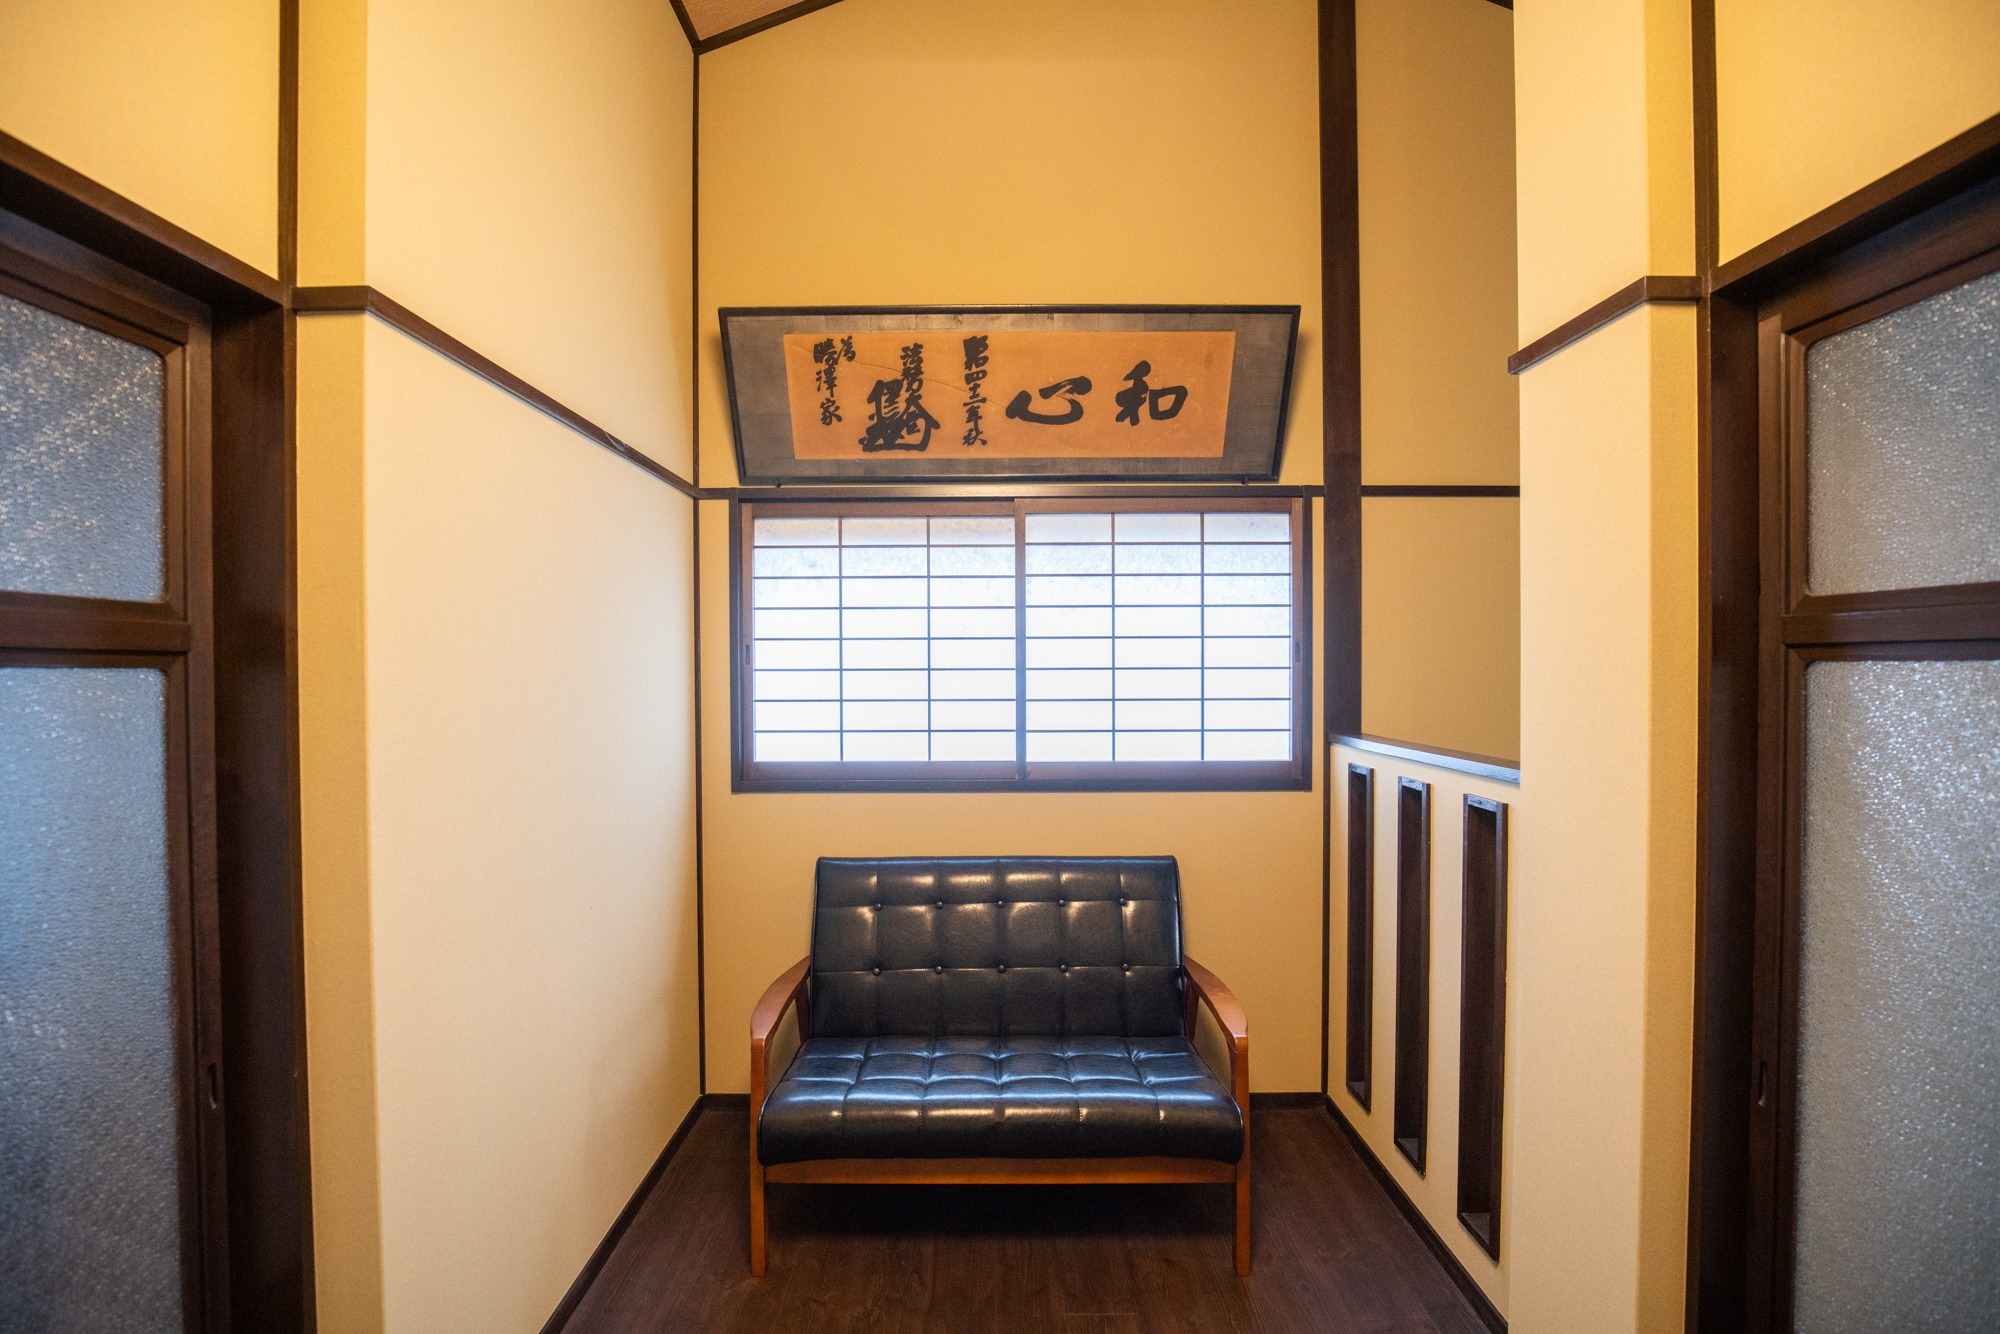 【京町・洛南】東寺のすぐそば。京都の歴史を百年見てきた町家。